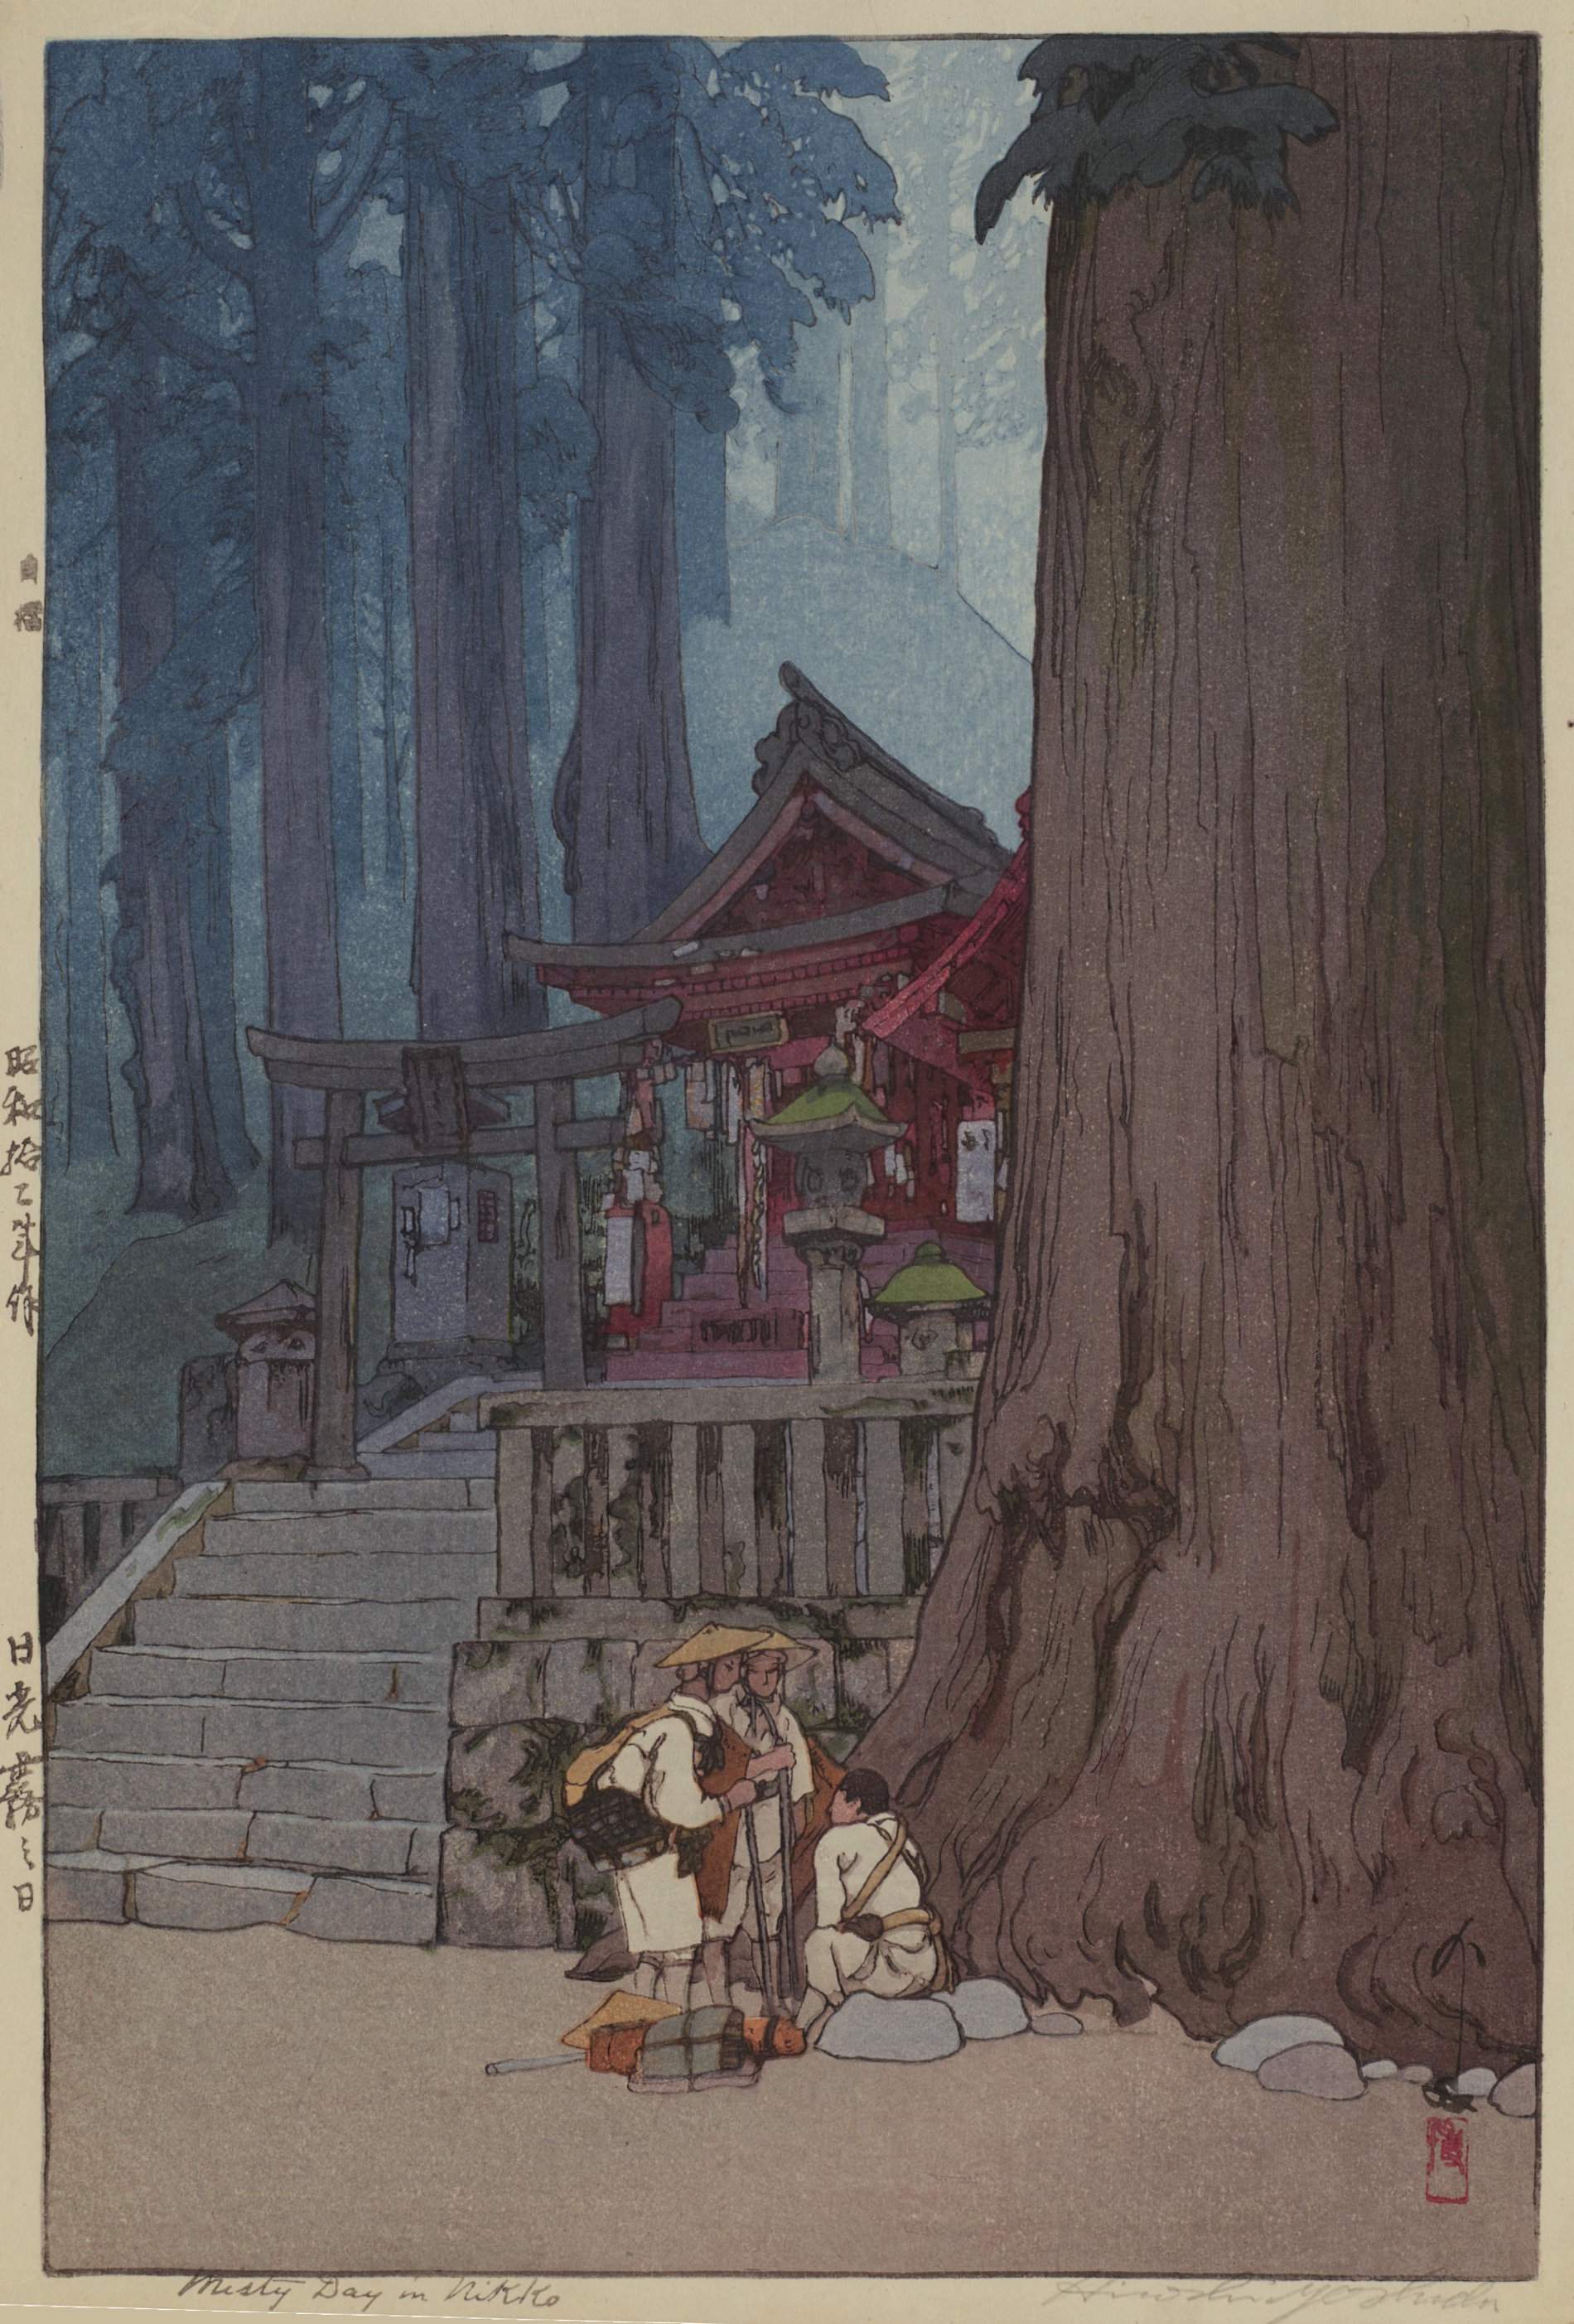 Hiroshi Yoshida “Misty Day in Nikko” 1937 woodblock print